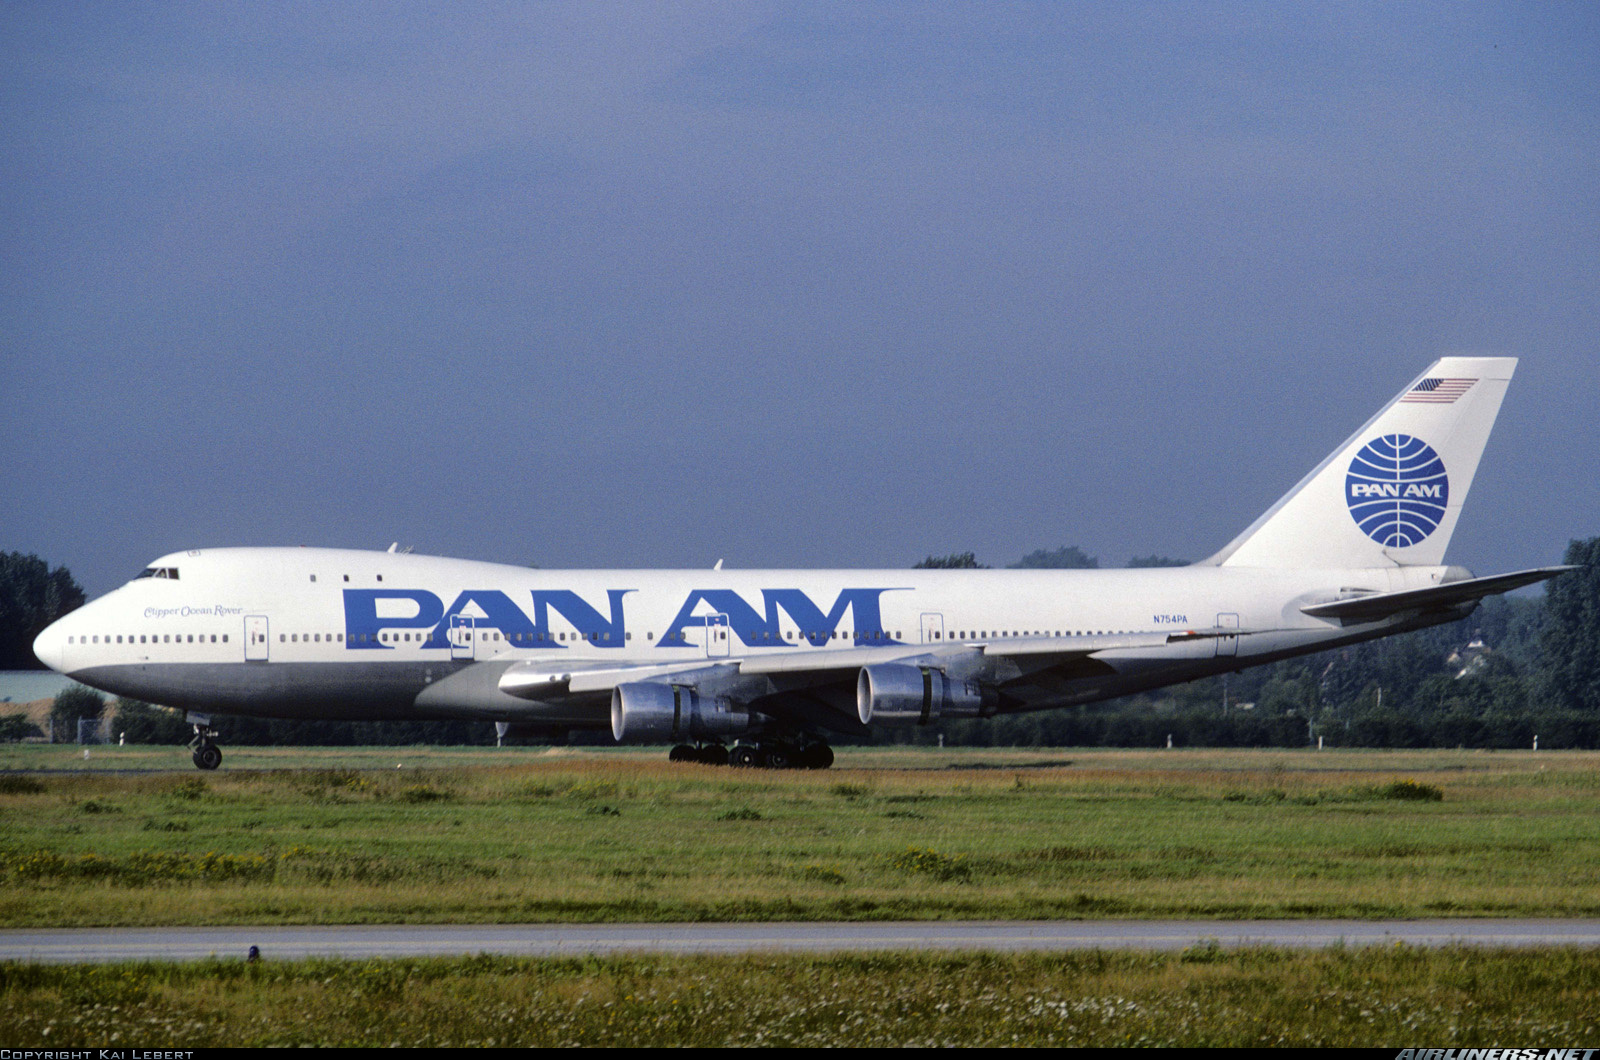 Pan American World Airways. Pan am Boeing 747-100; n736pa. Pan am Caribbean. Pan American Word Airways. World pan